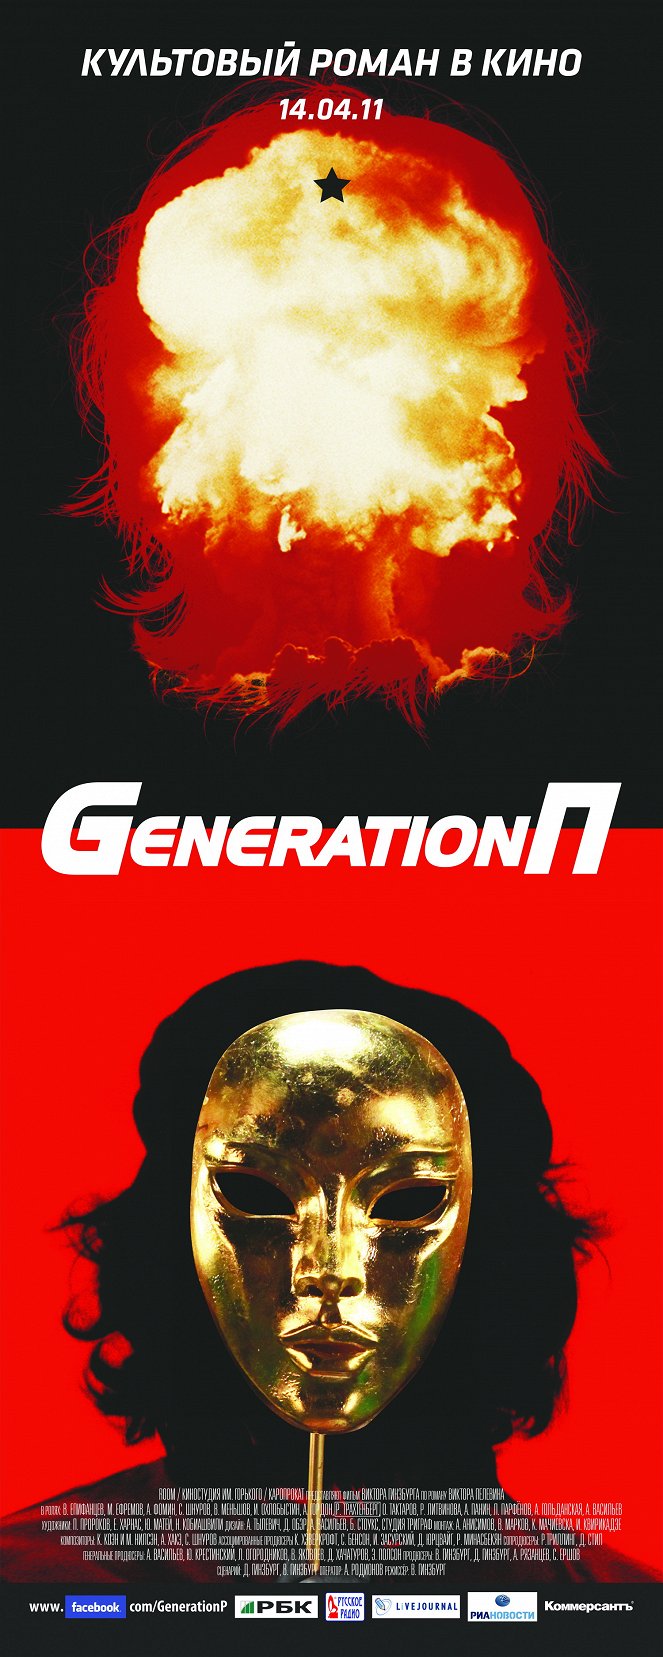 Generation P - Plakaty